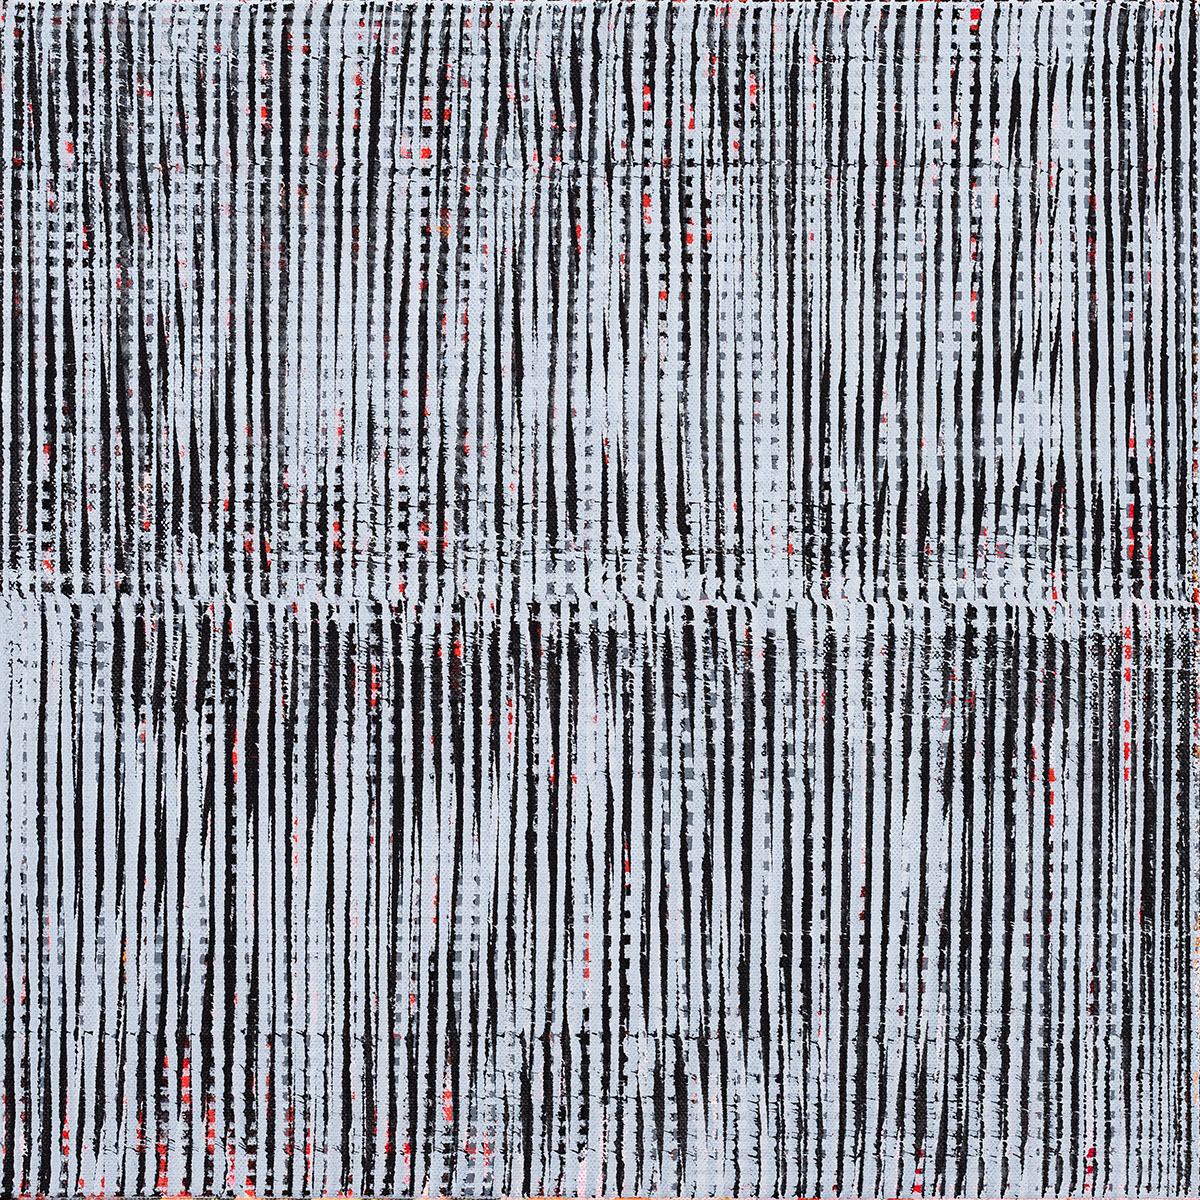 Nikola Dimitrov, Kleine Komposition GrauRot, 2017, Pigmente, Bindemittel auf Leinwand, 40 × 40 cm